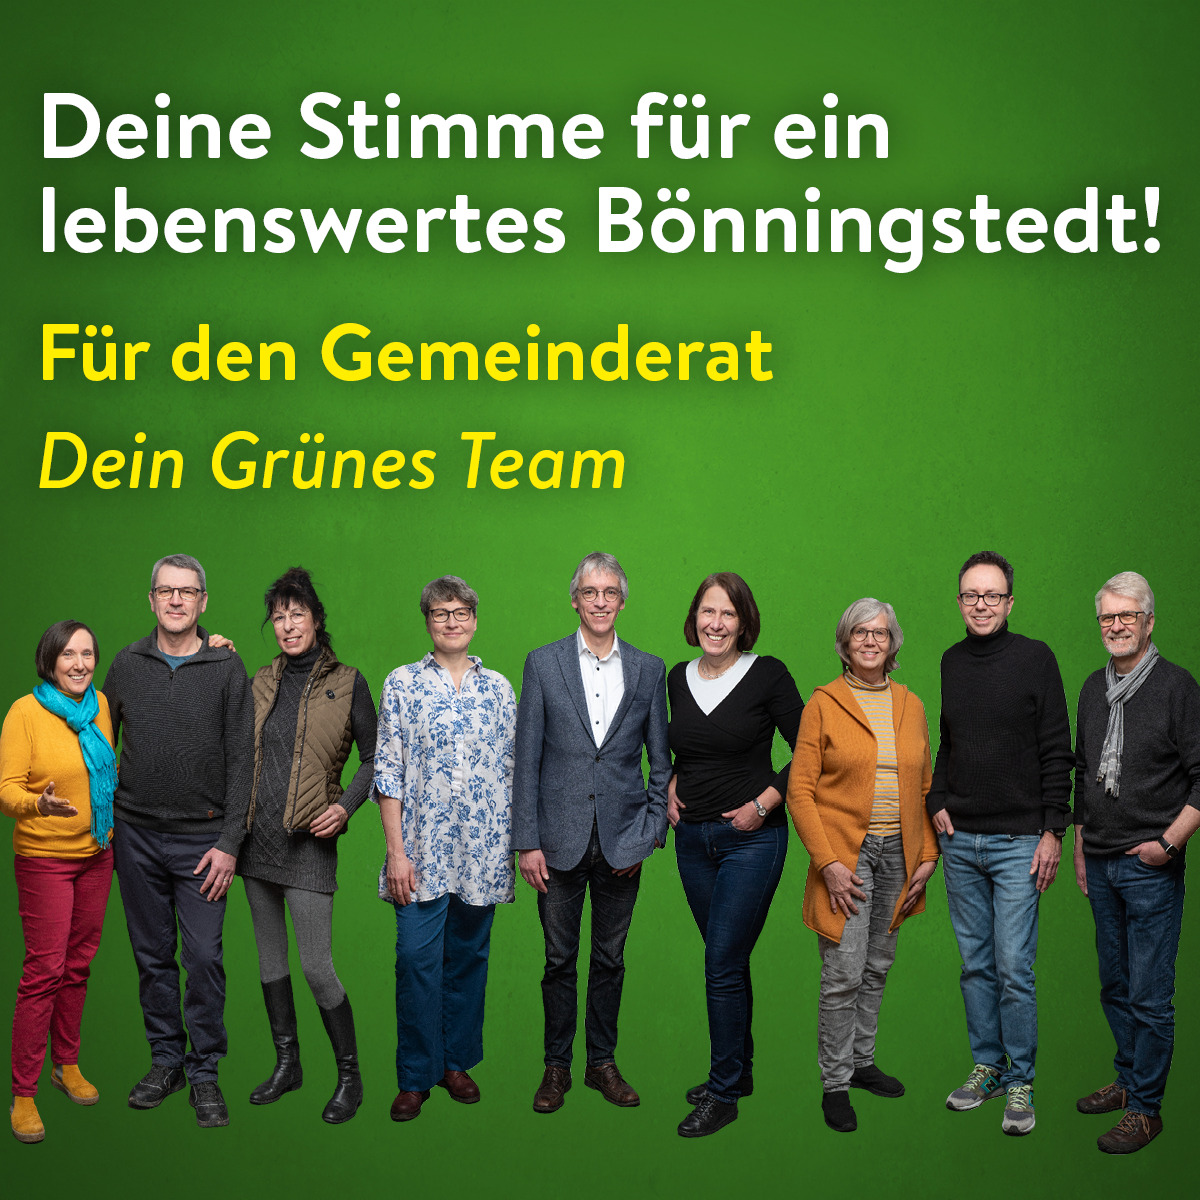 Deine Stimme für ein lebenswertes Bönningstedt. Für den Gemeinderat dein grünes Team.